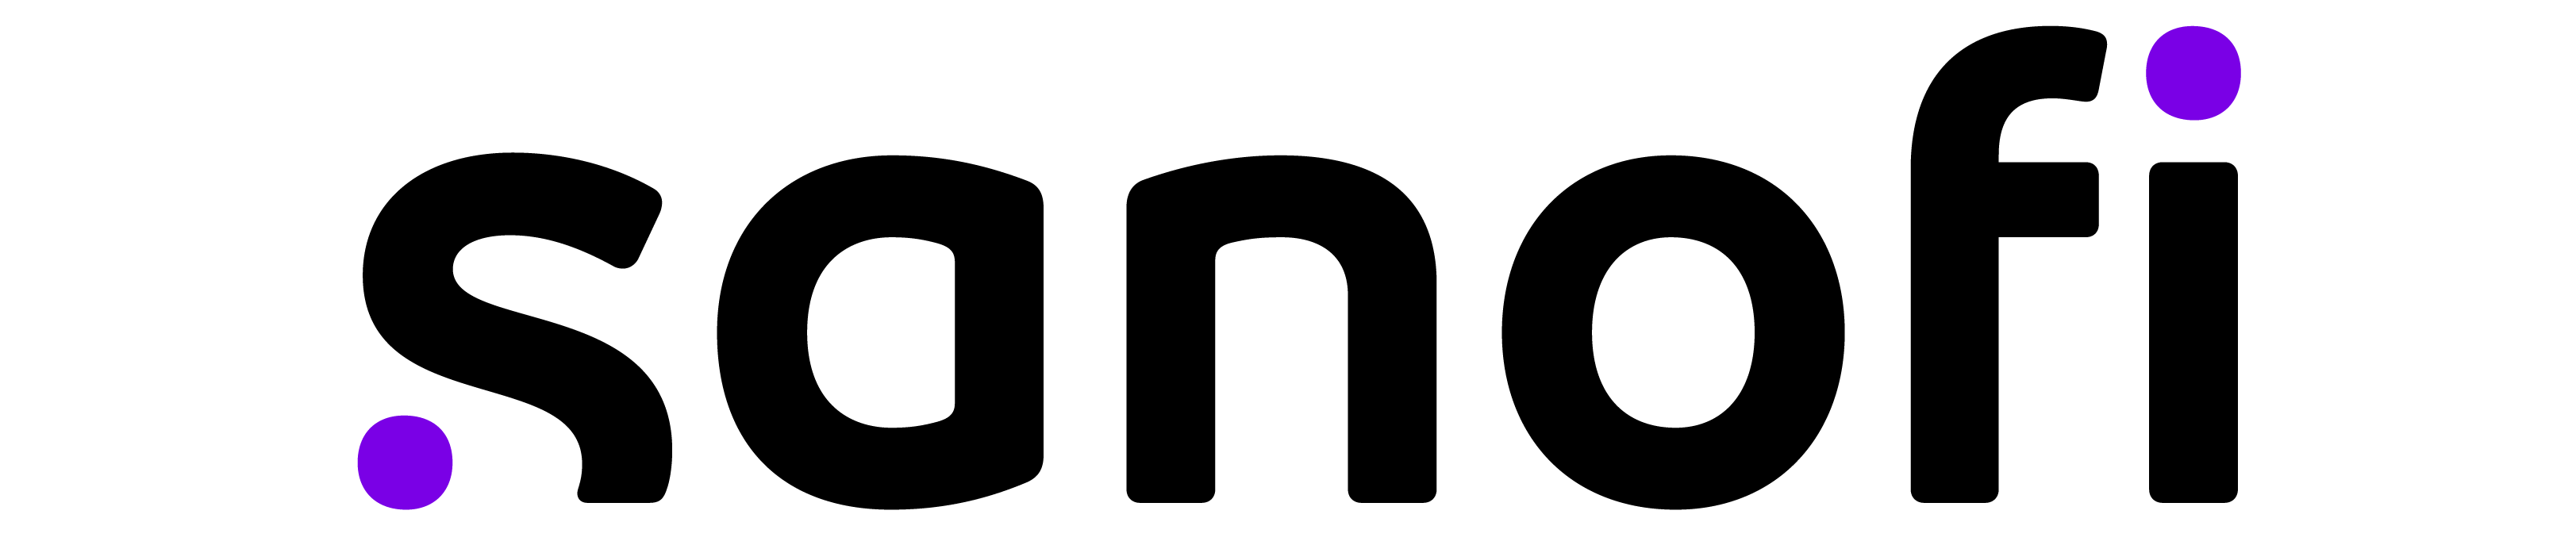 Логотип Sanofi со значком